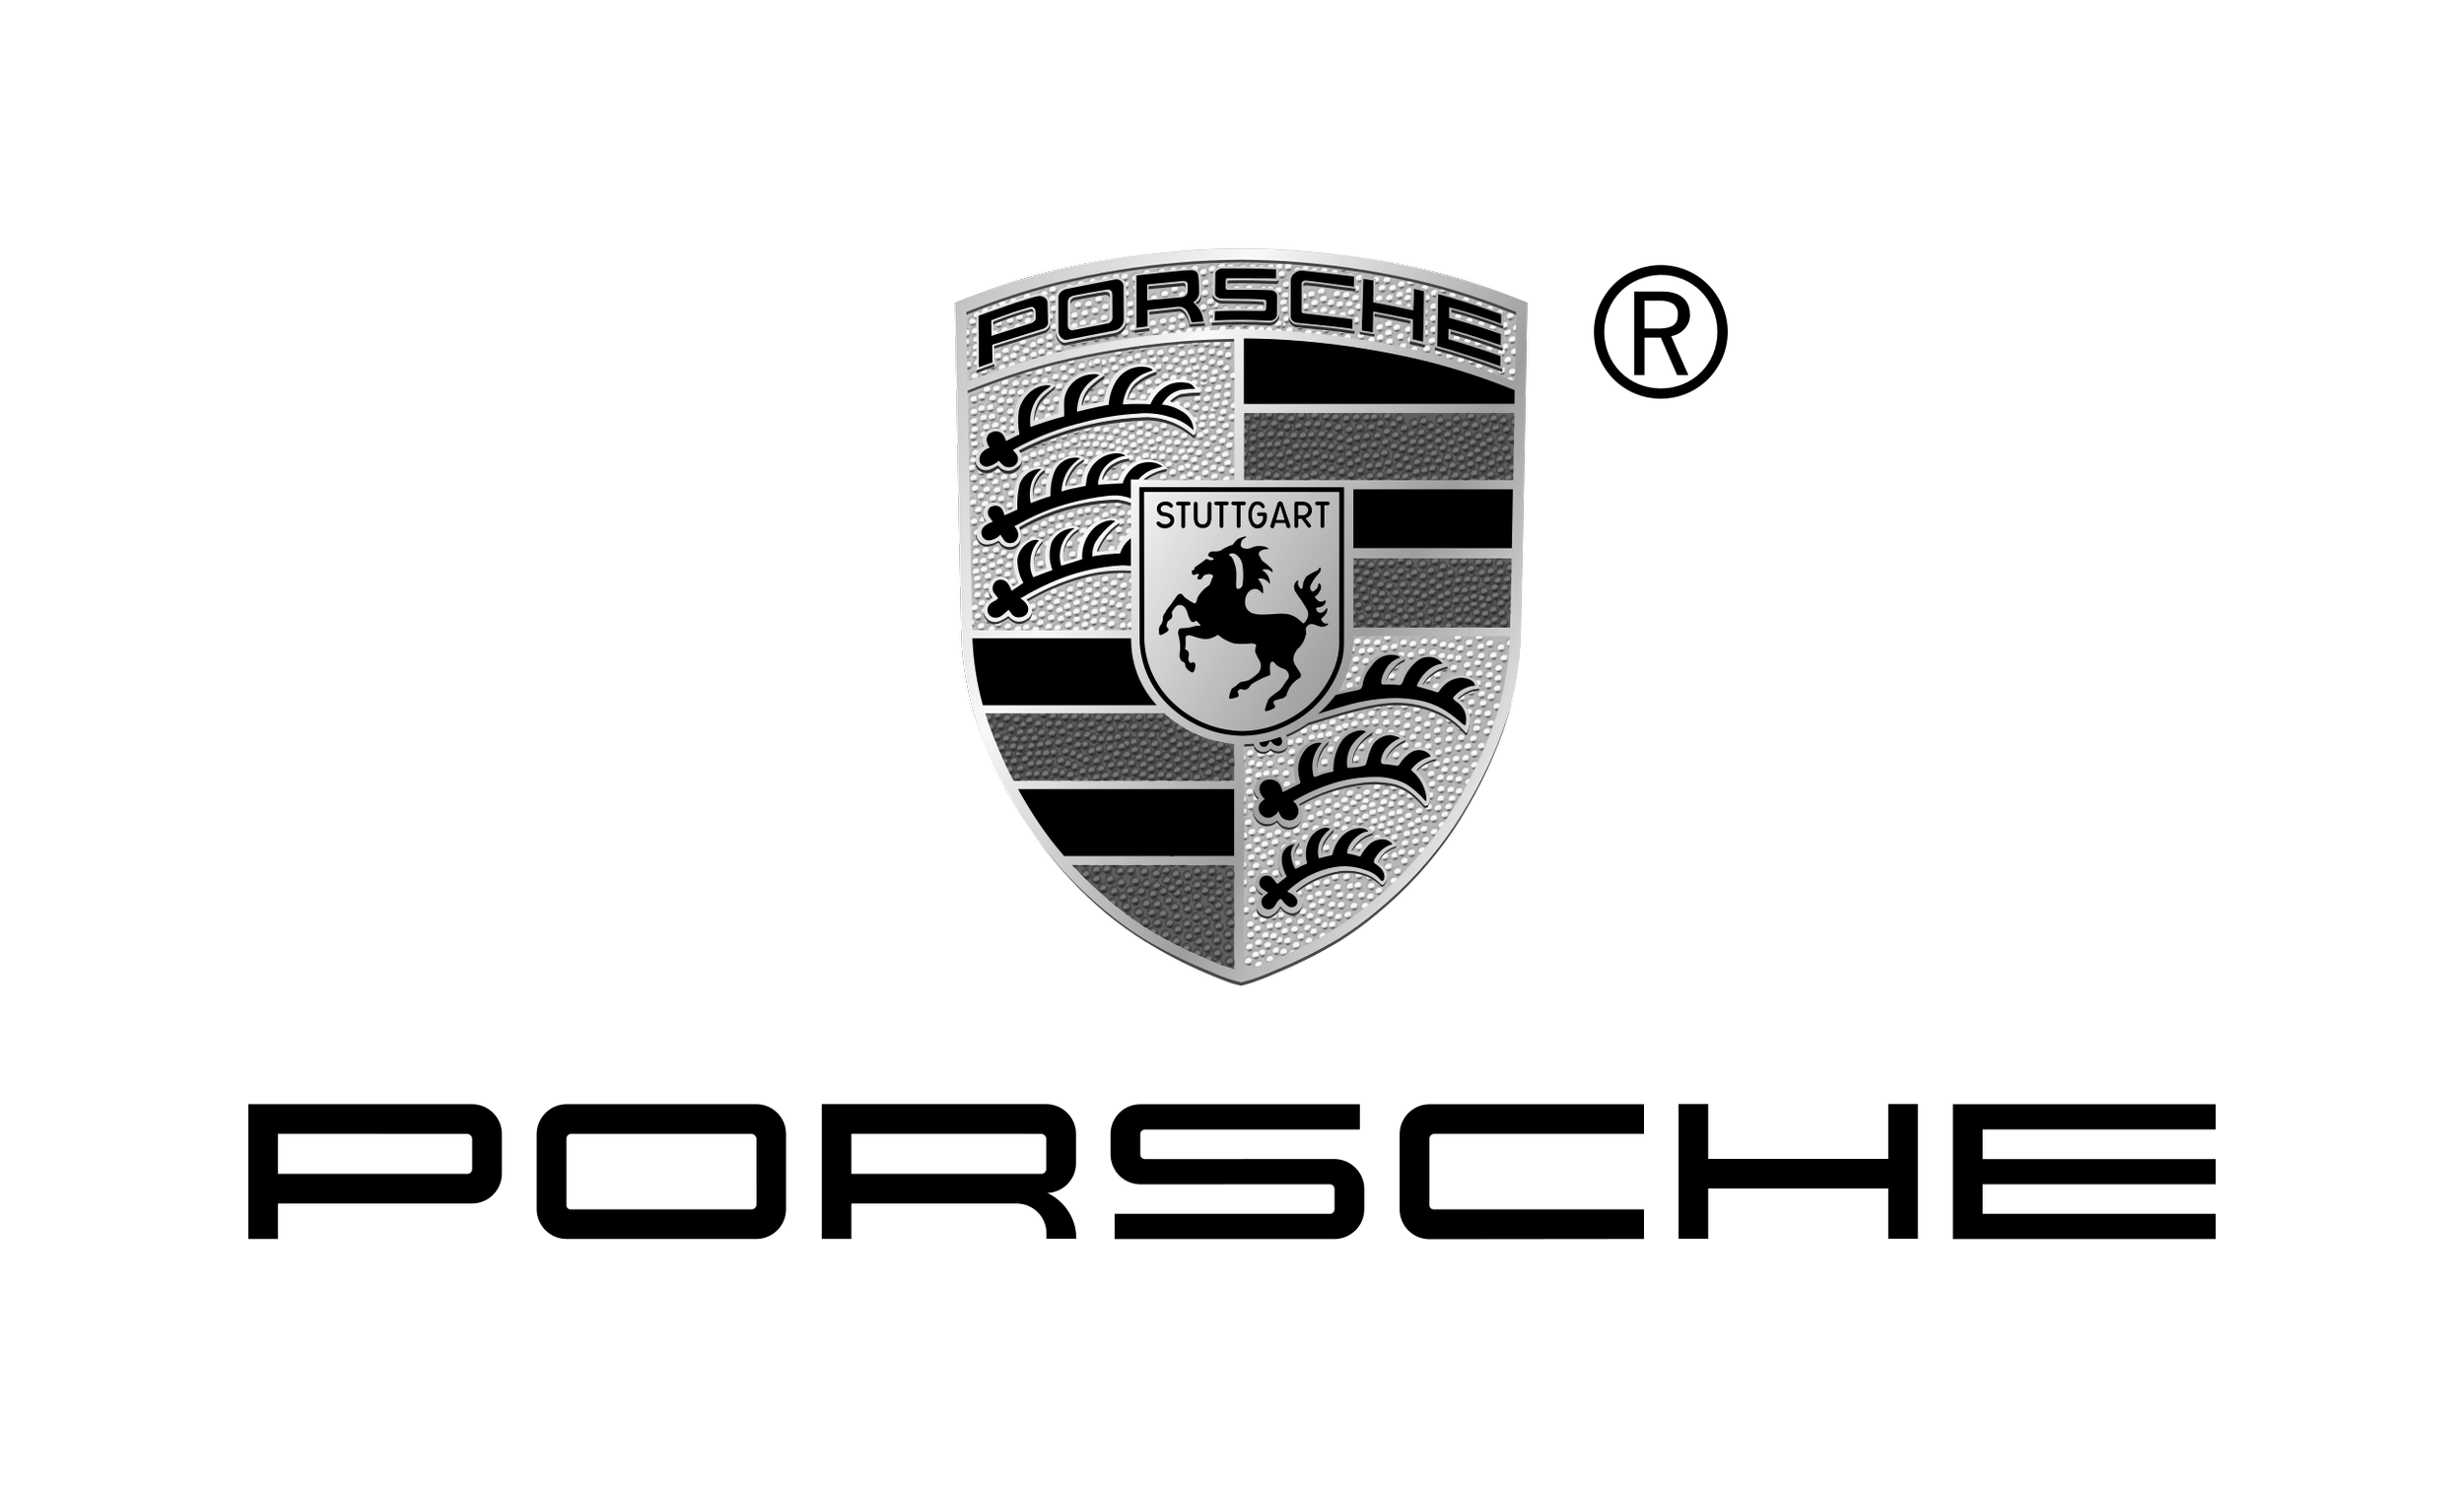 Porsche_logo.png